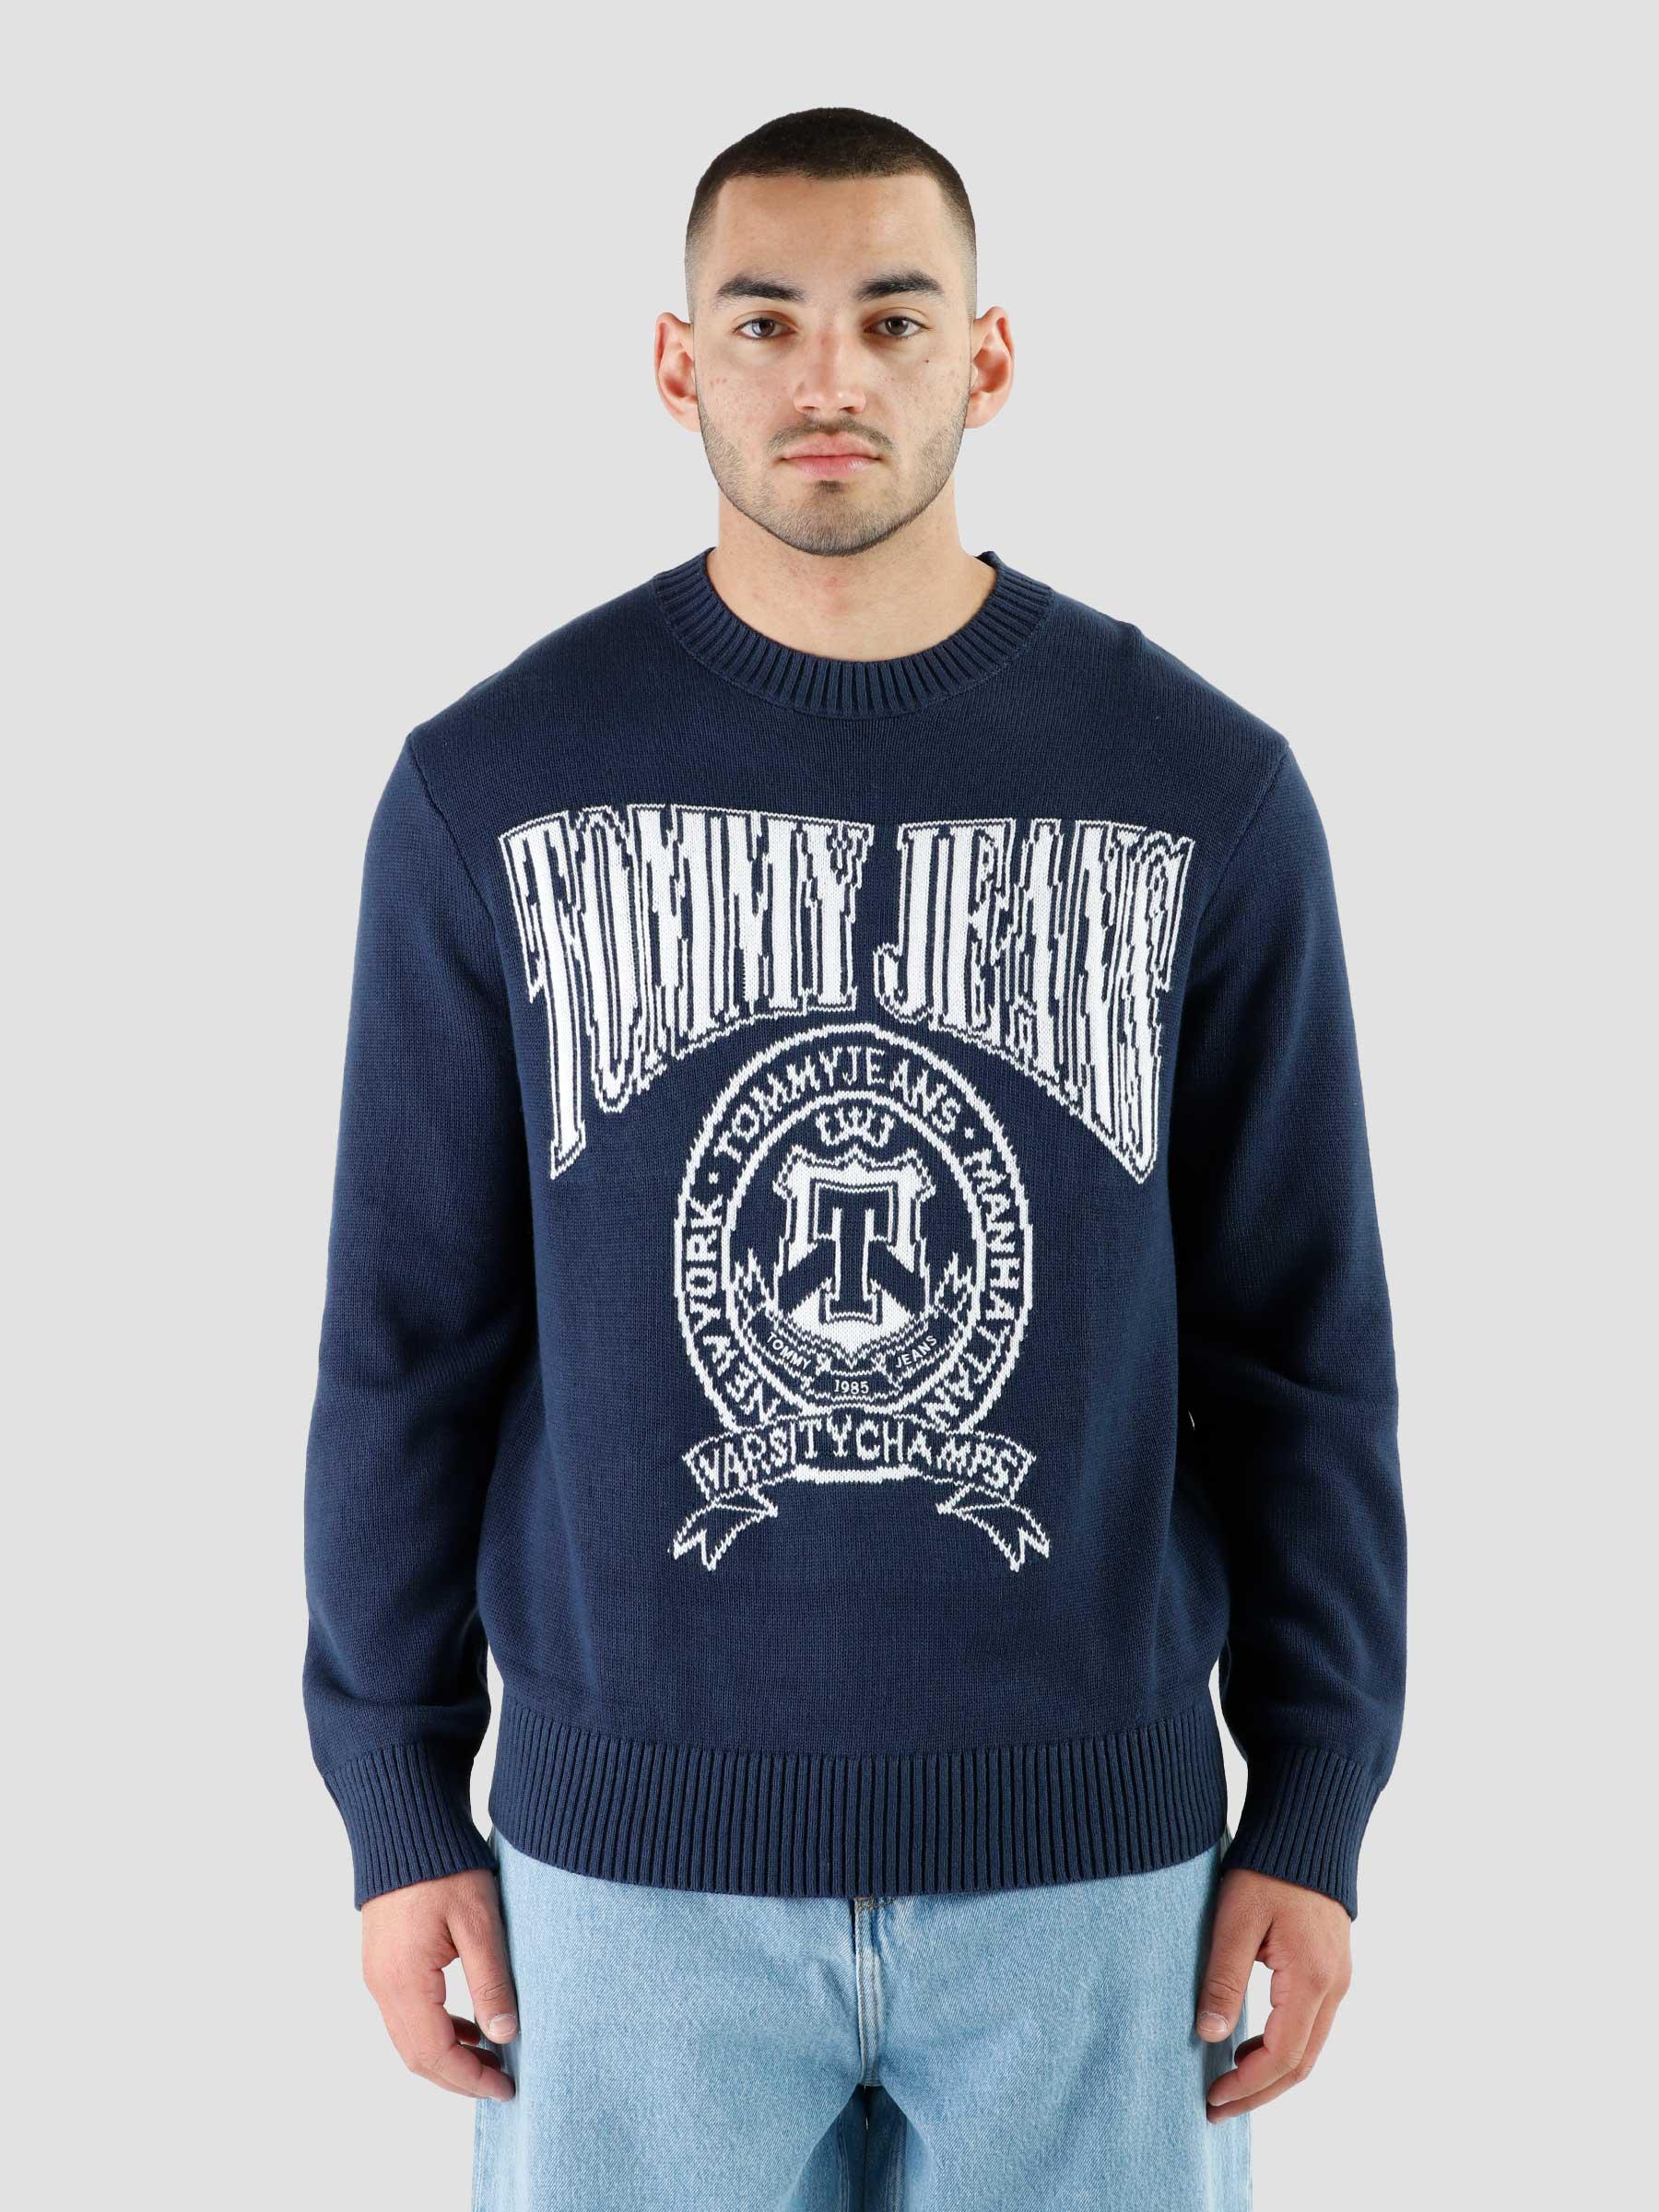 Tommy Jeans TJM RLXD Varsity Jacket Twilight Navy - Freshcotton